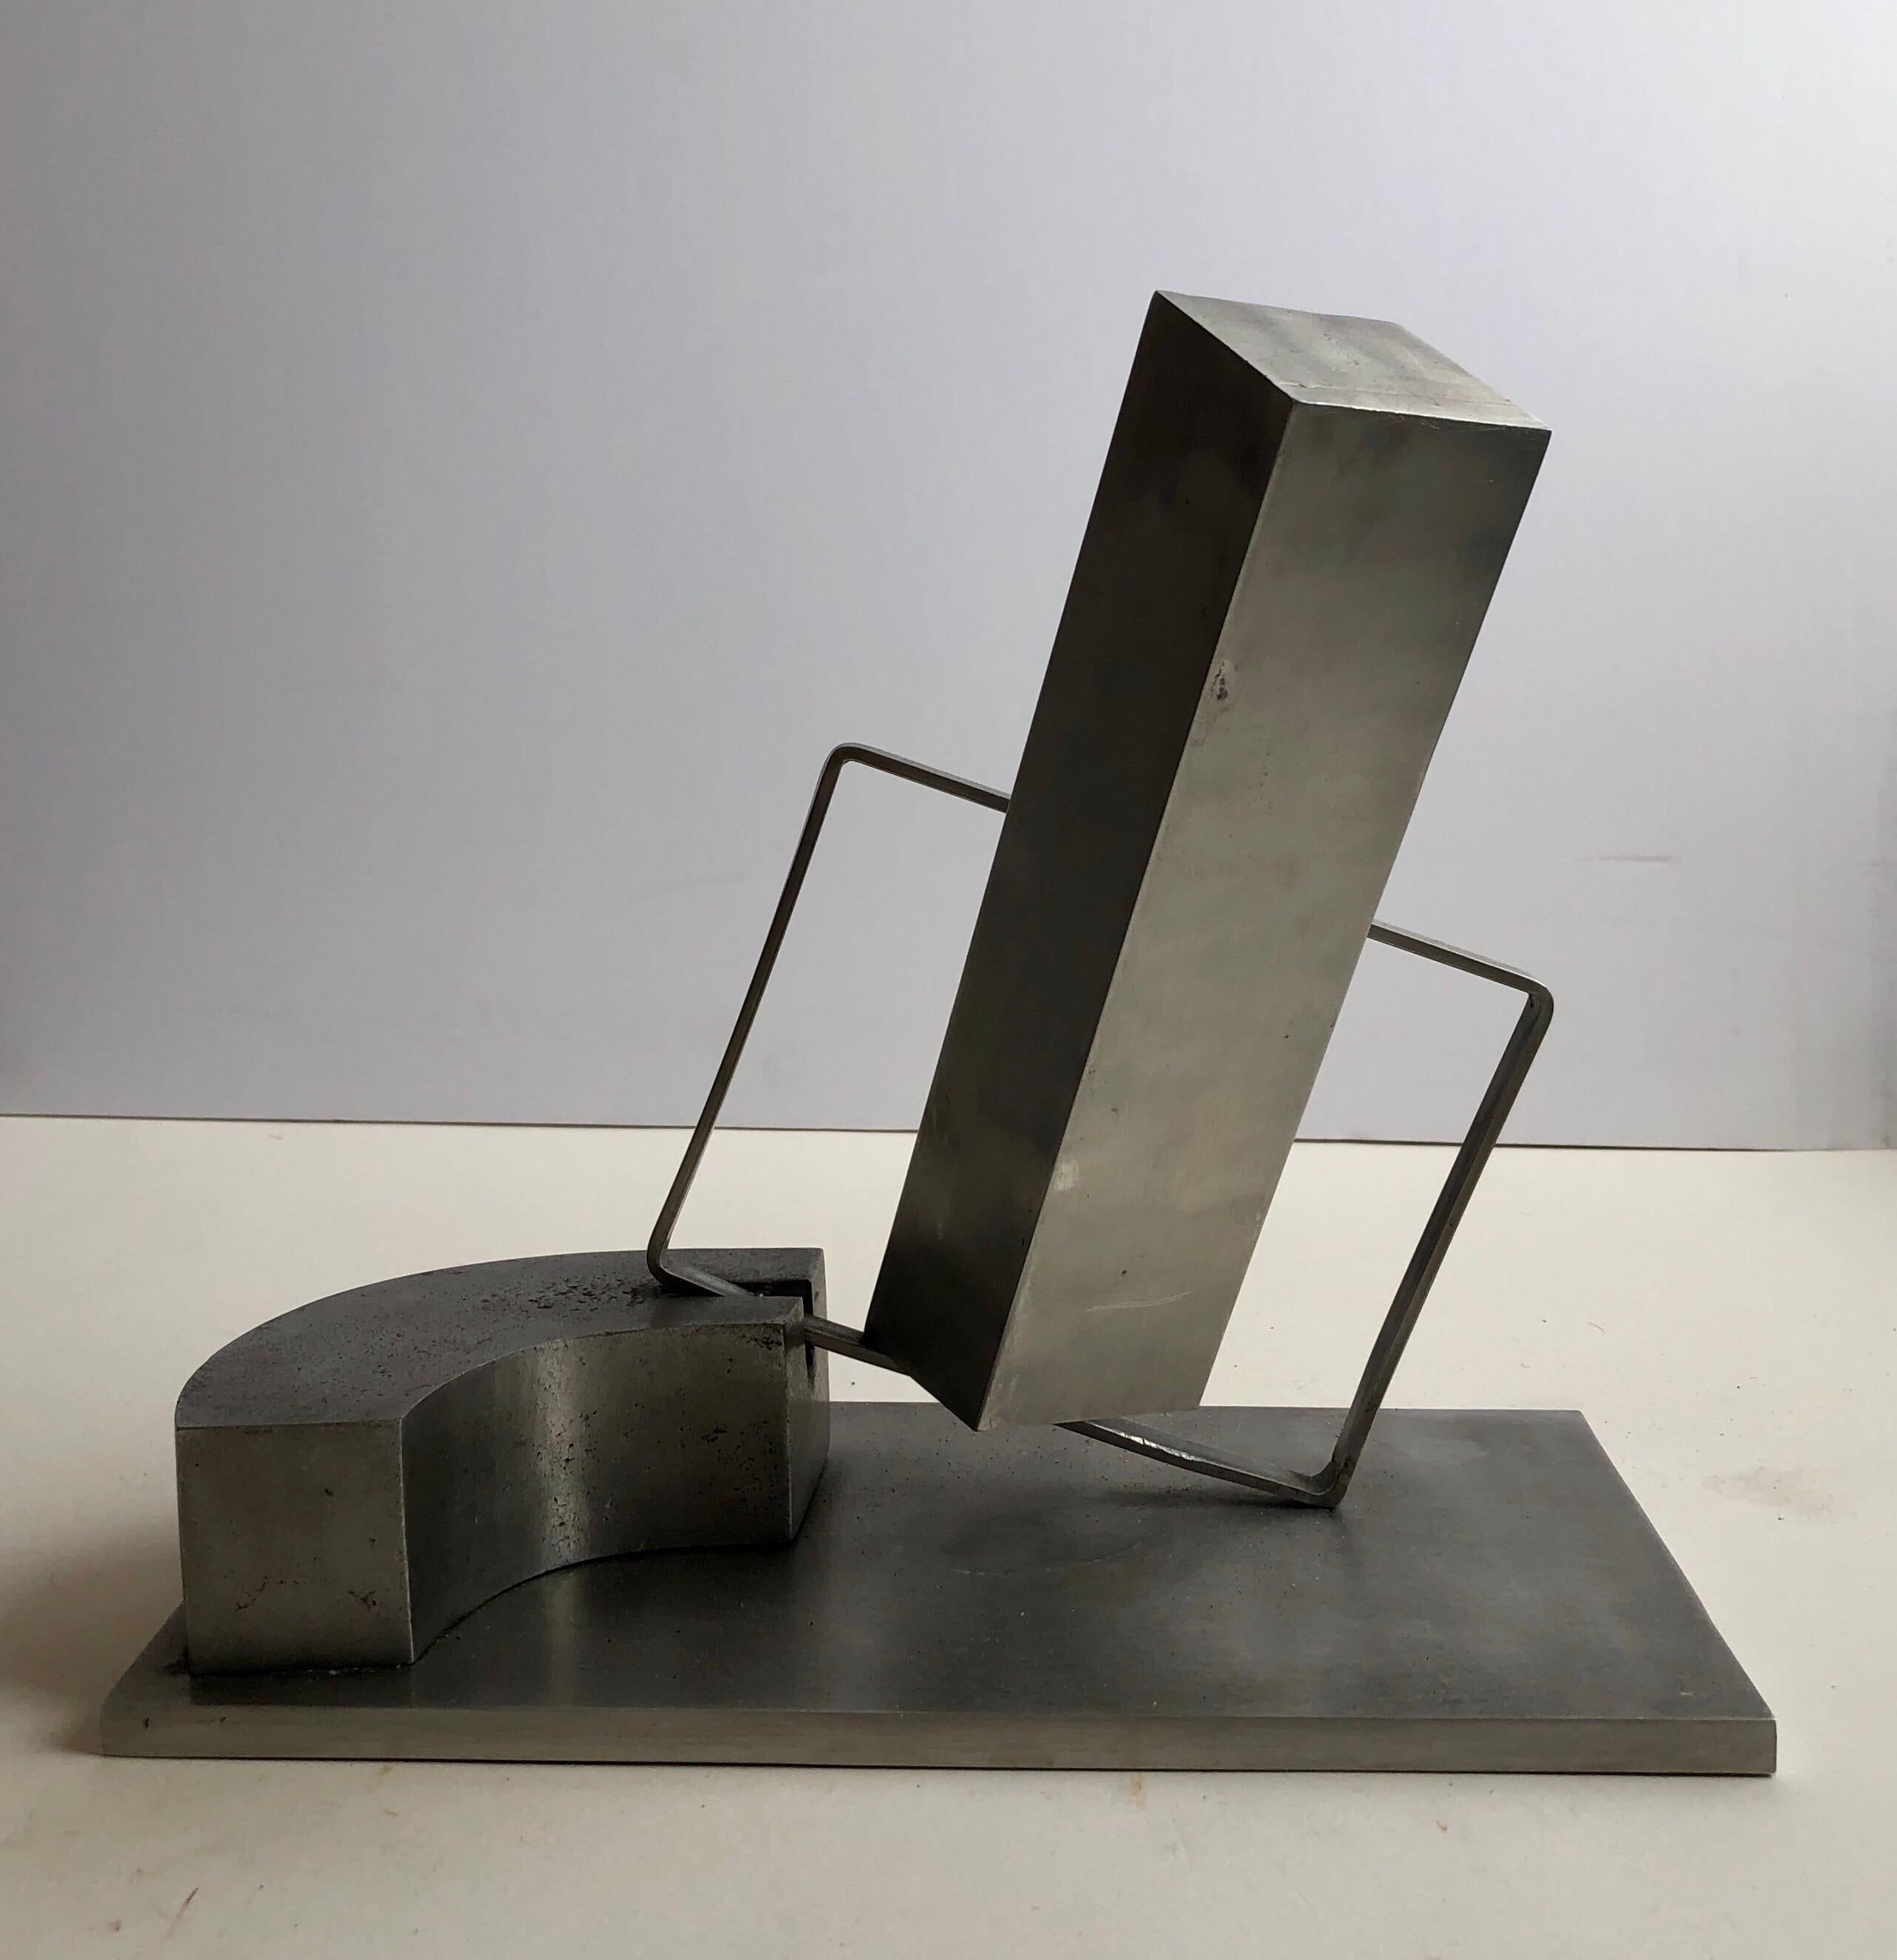 1969 Israeli Abstract Sculpture Stainless Steel Menashe Kadishman Suspension 1